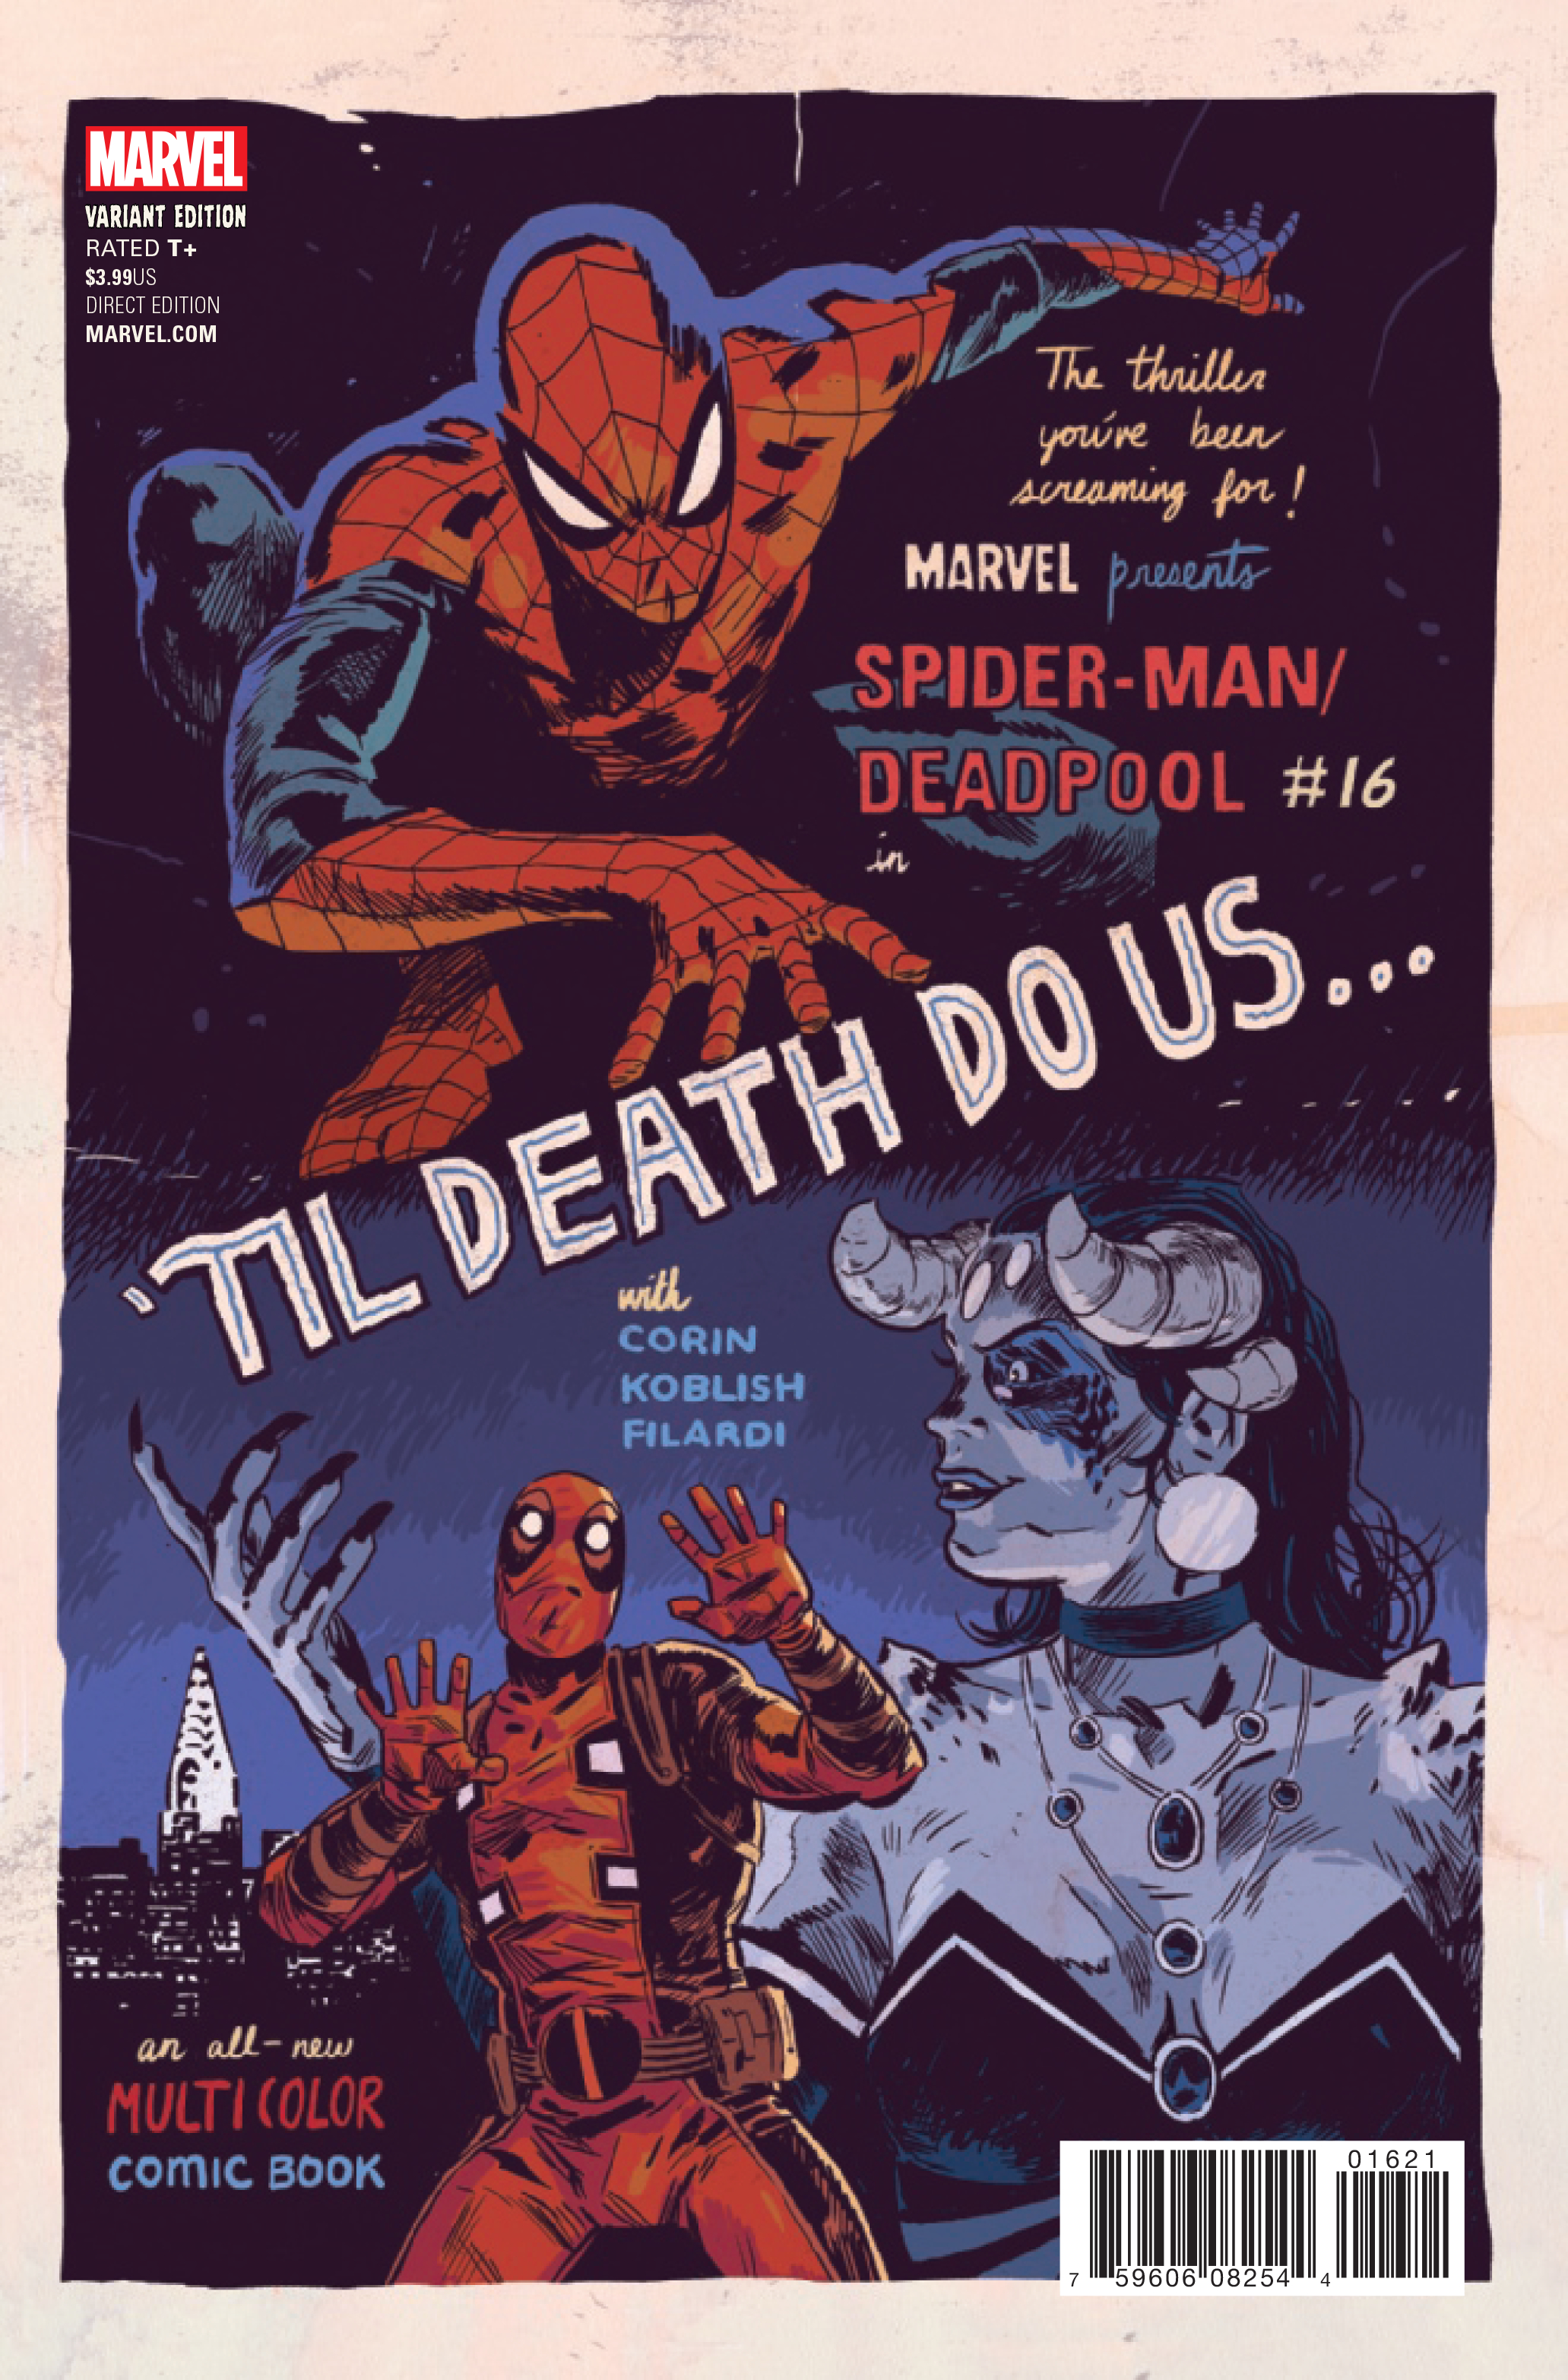 Feb170922 Spider Man Deadpool 16 Walsh Poster Var